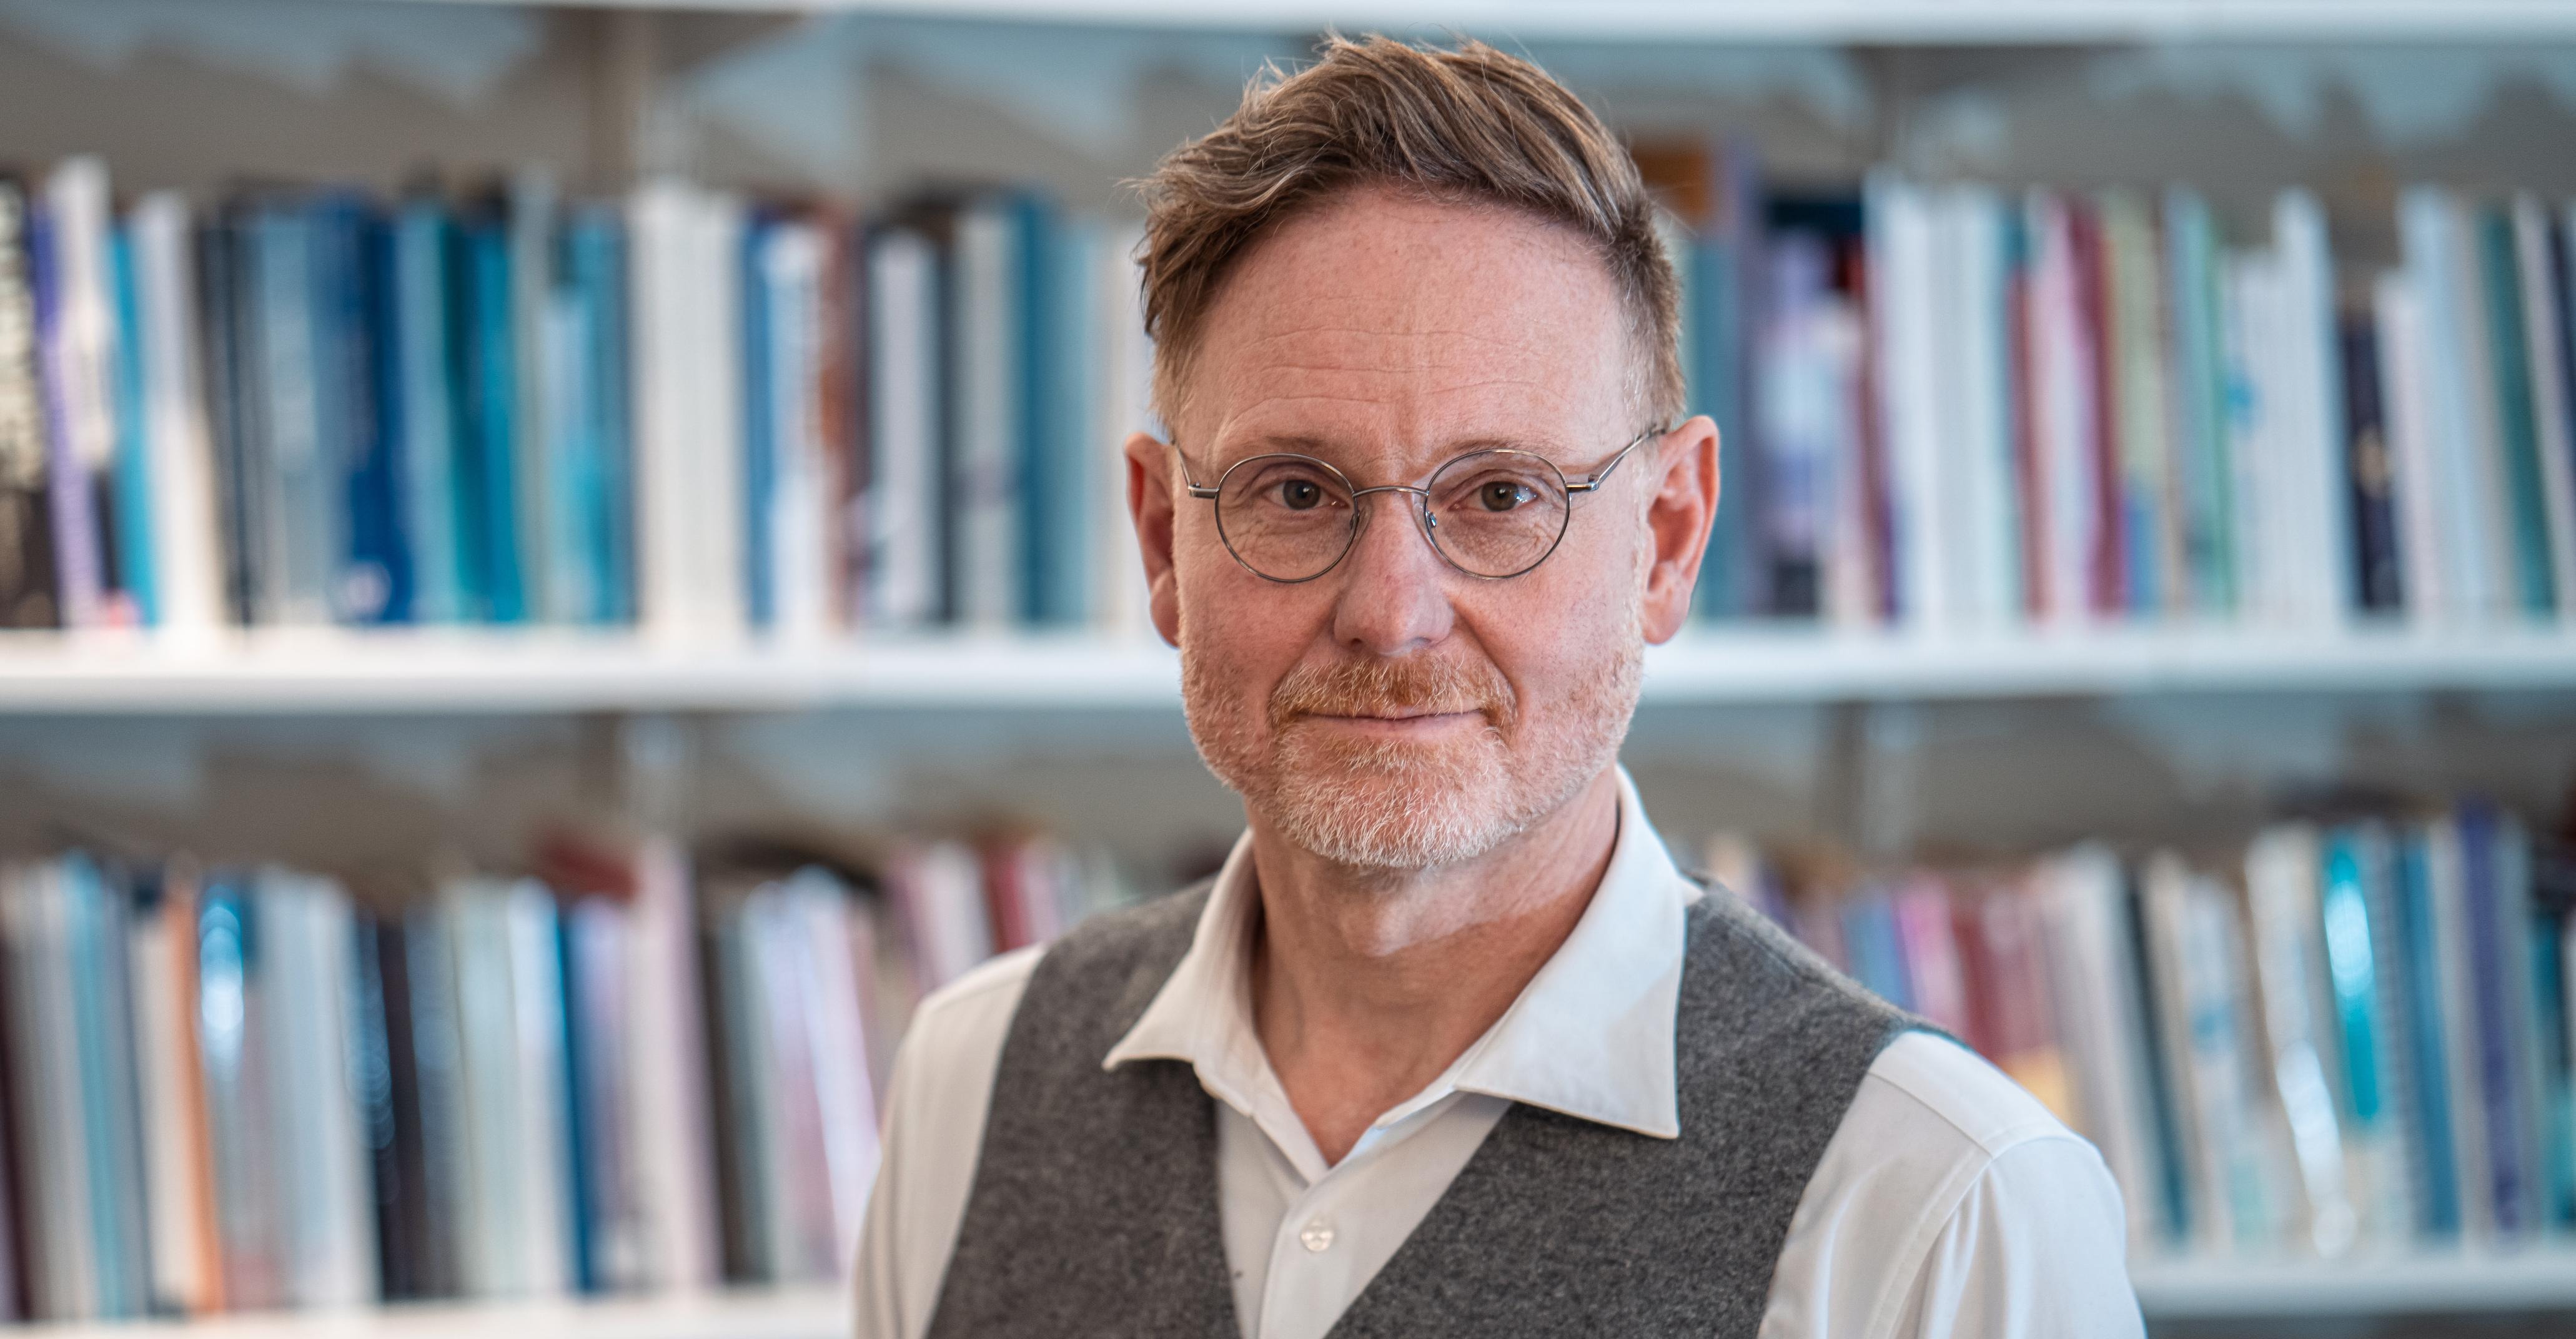 Magnus Karlsson har en vit skjorta, en grå väst och runda glasögon. Han tittar in i kameran och bakom honom syns många böcker i en vit bokhylla.